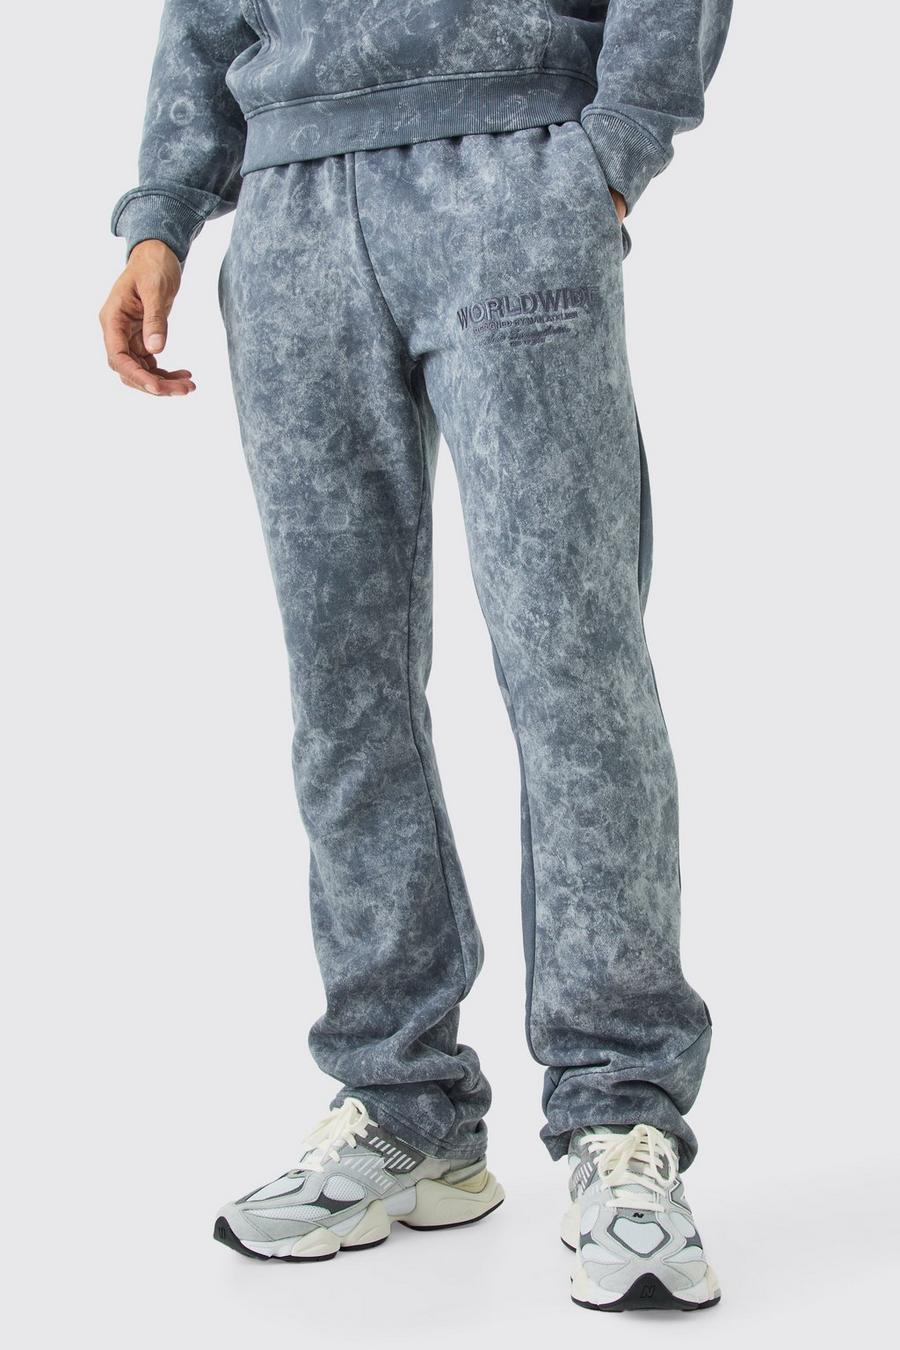 Pantaloni tuta slavati con applique, smagliature e pieghe sul fondo, Charcoal